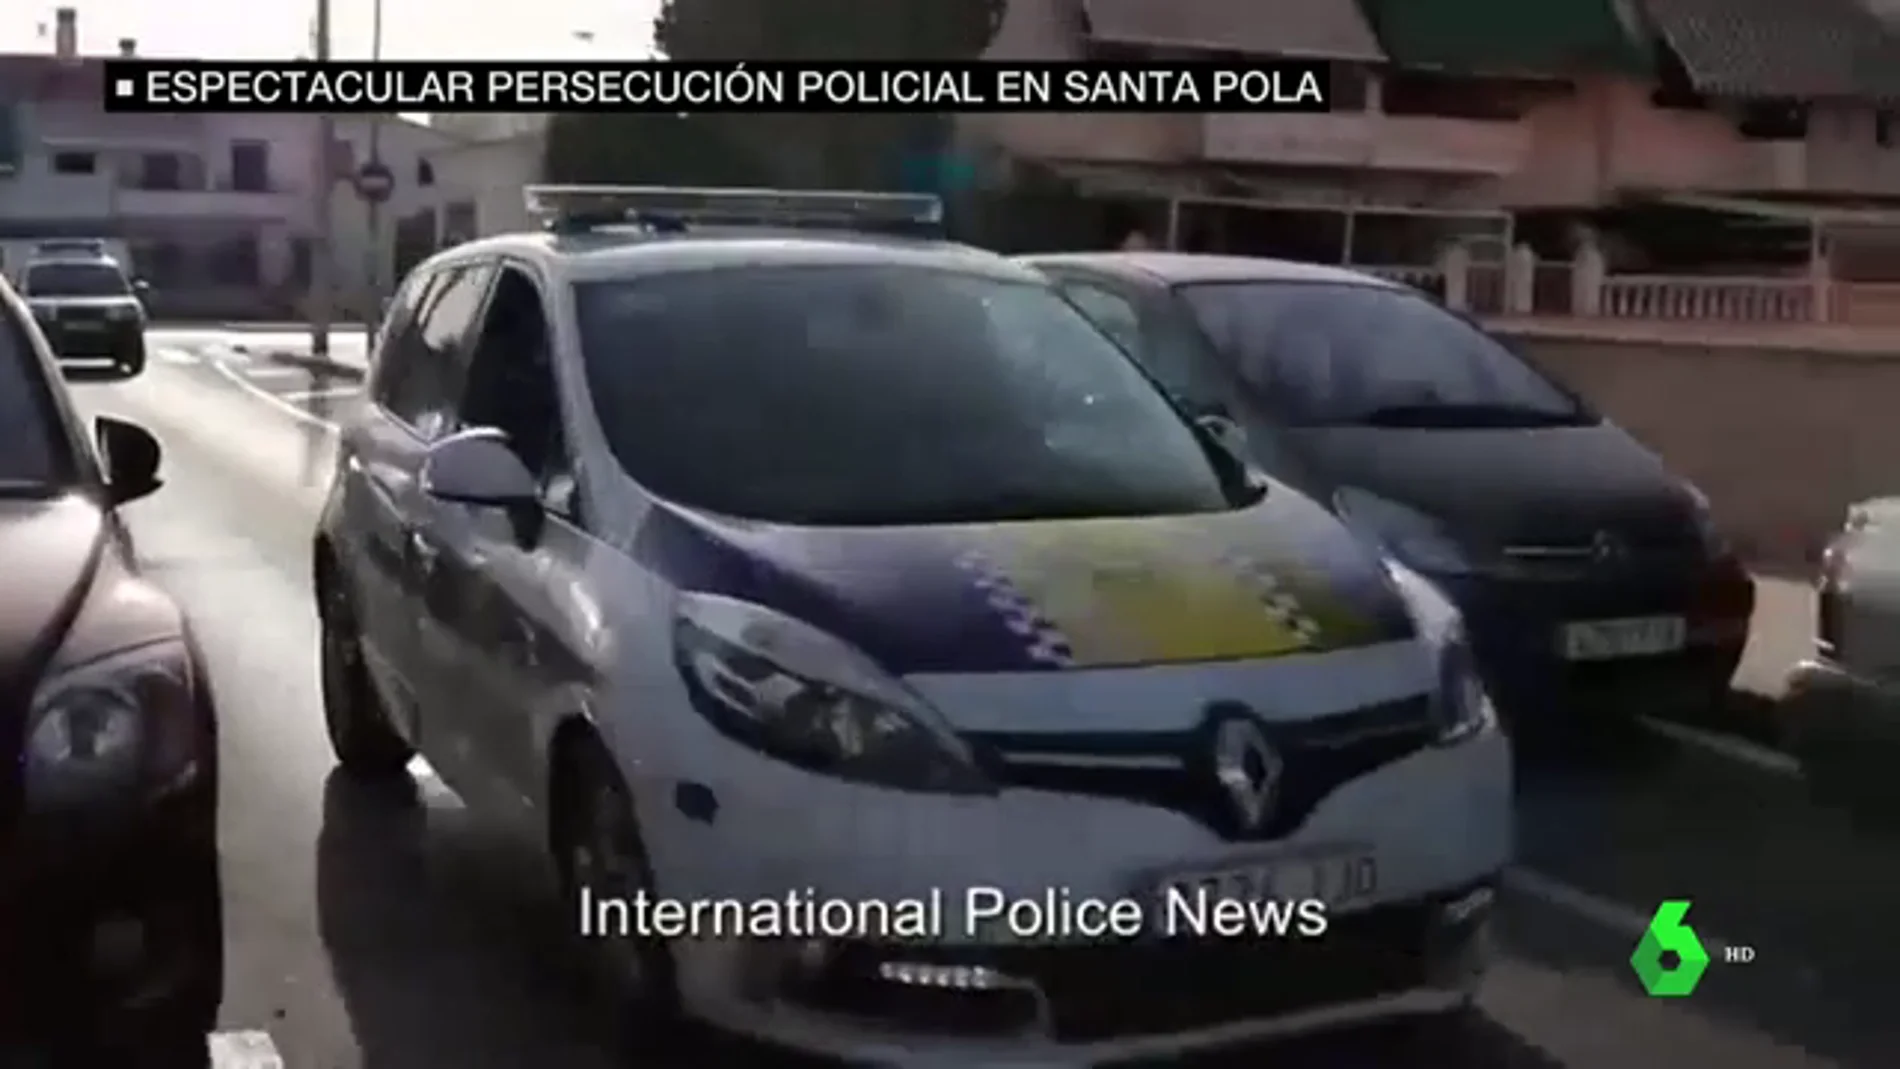 Espectacular persecución policial en Santa Pola tras un robo con violencia: "¡Quieto o disparo!"